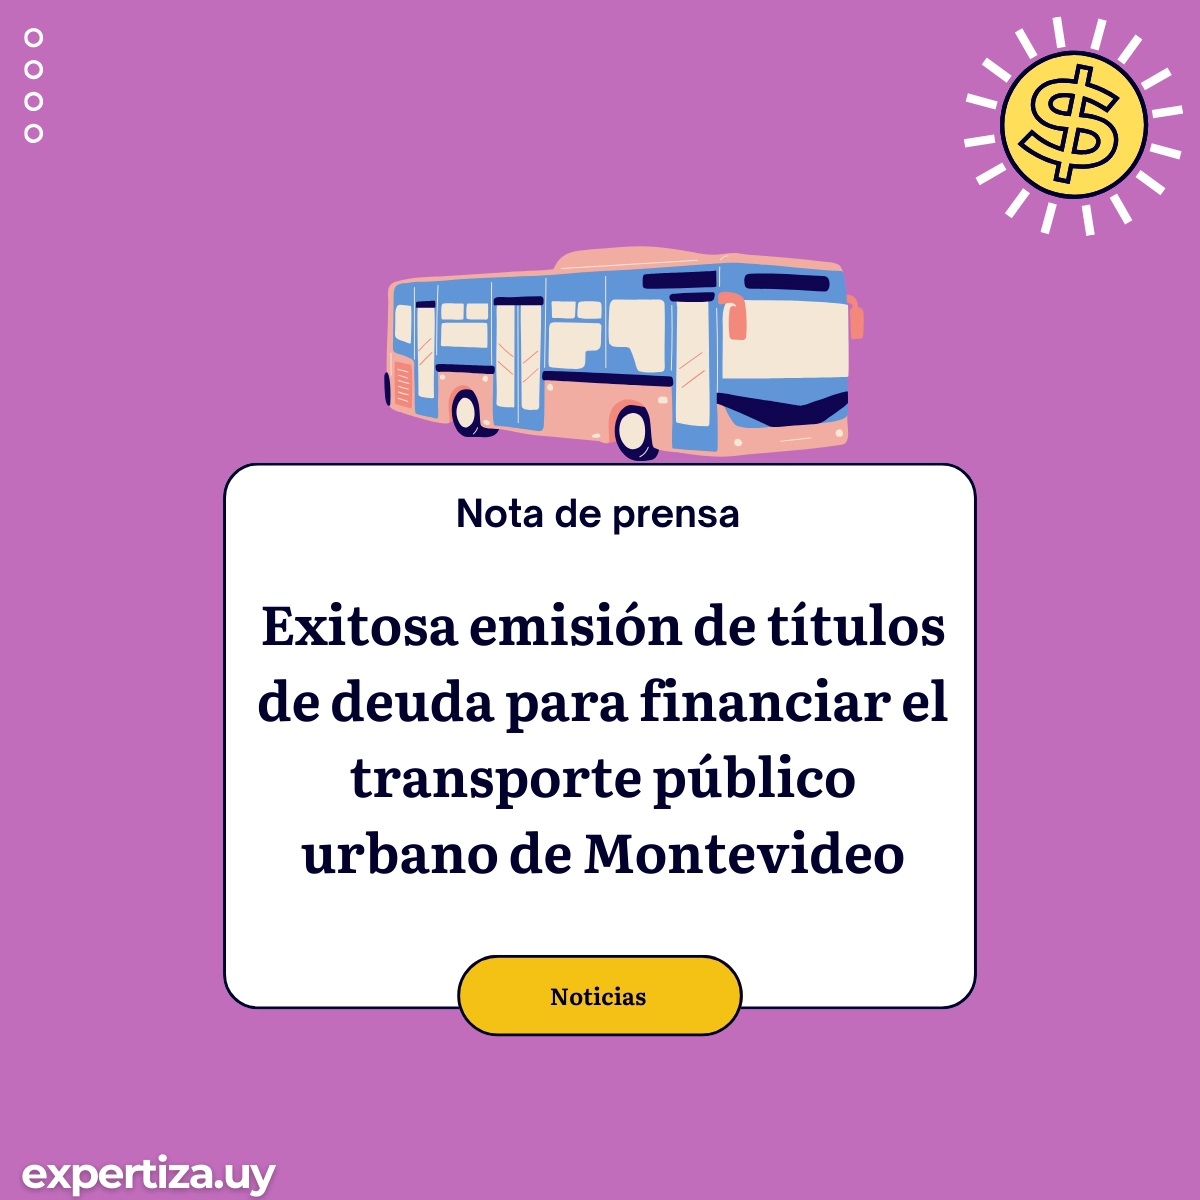 Exitosa emisión de títulos de deuda para financiar el transporte público urbano de Montevideo.